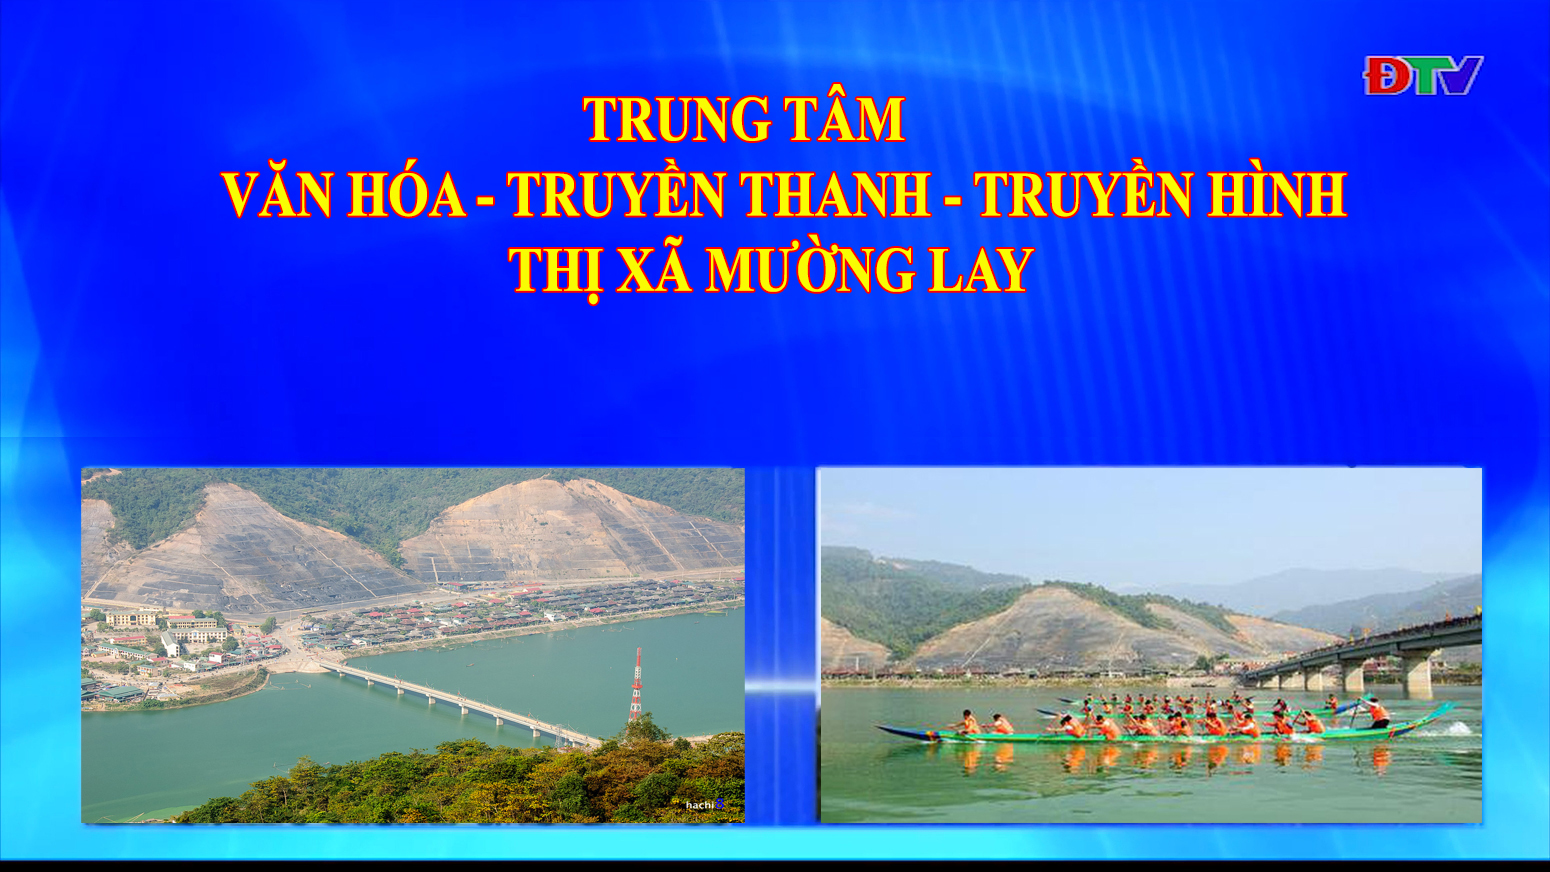 Trung tâm VH-TTTH thị xã Mường Lay (Ngày 13-5-2022)